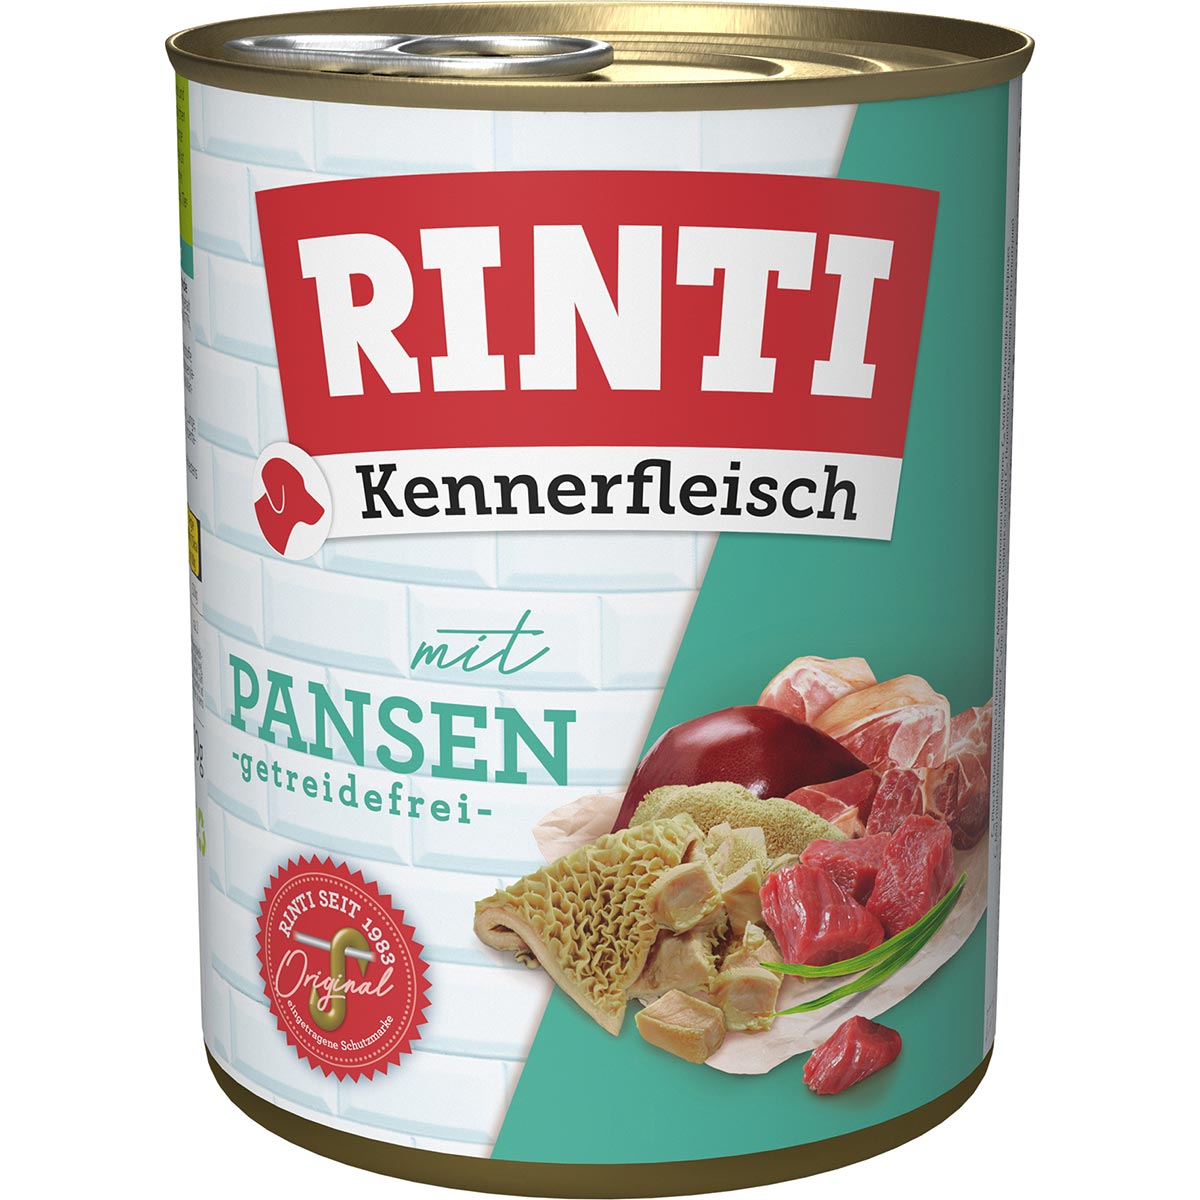 Rinti Kennerfleisch Pansen 12x800g